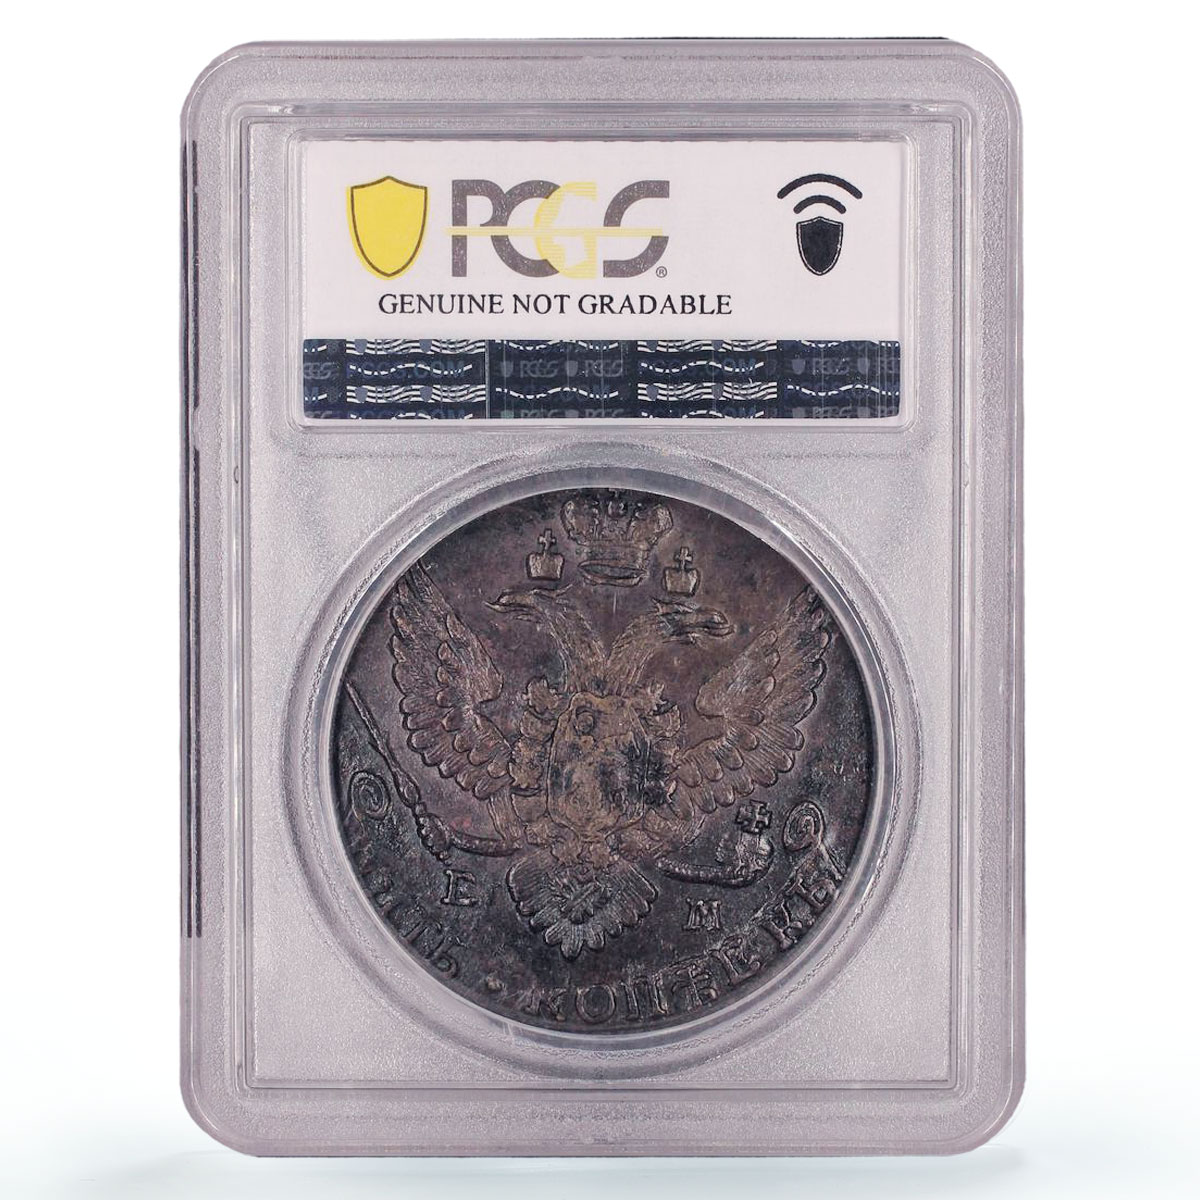 Russia Empire 5 kopecks Ekaterina II Coinage Bit-643 UNC PCGS copper coin 1789